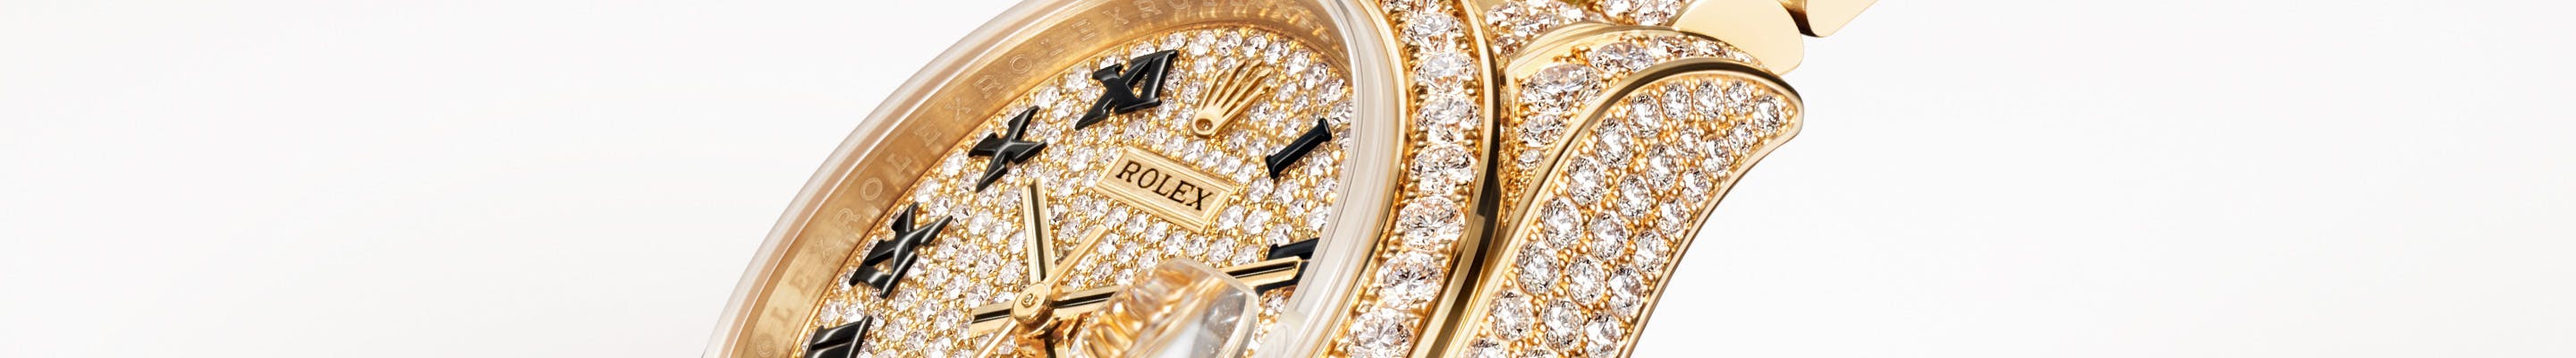 Rolex Lady-Datejust at Eiseman Jewels in Dallas, Texas